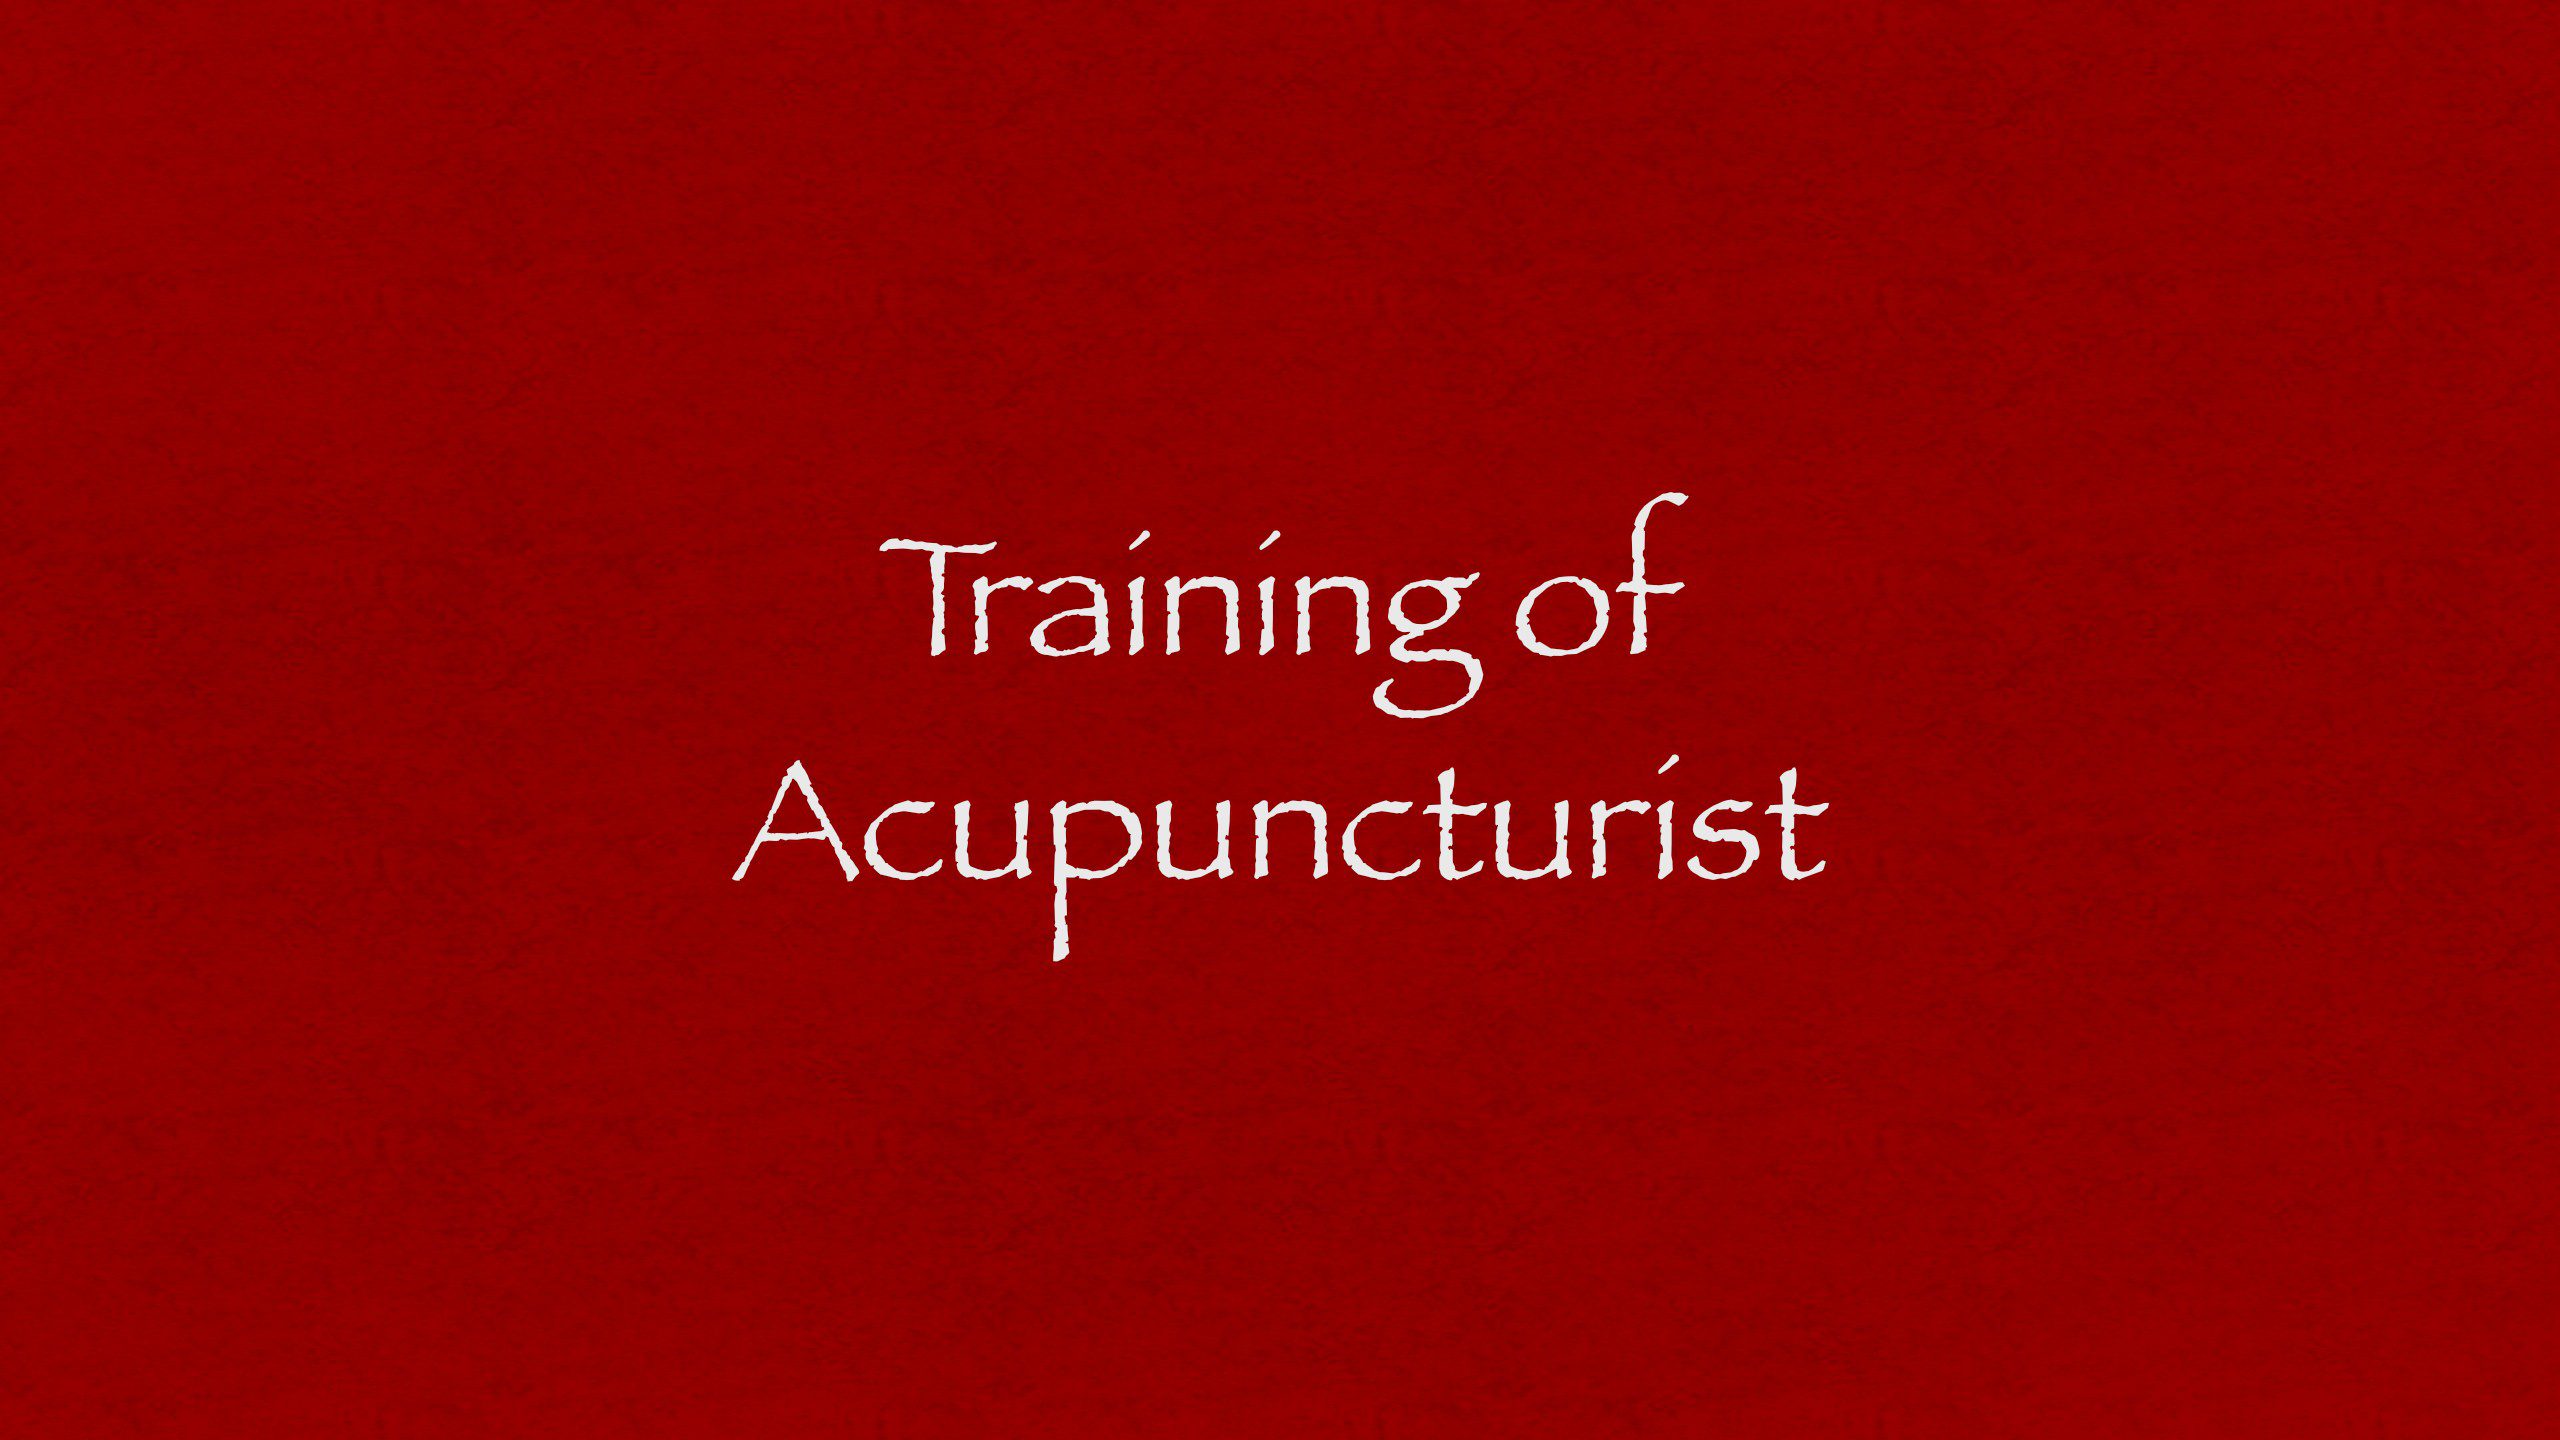 Training of Acupuncturist